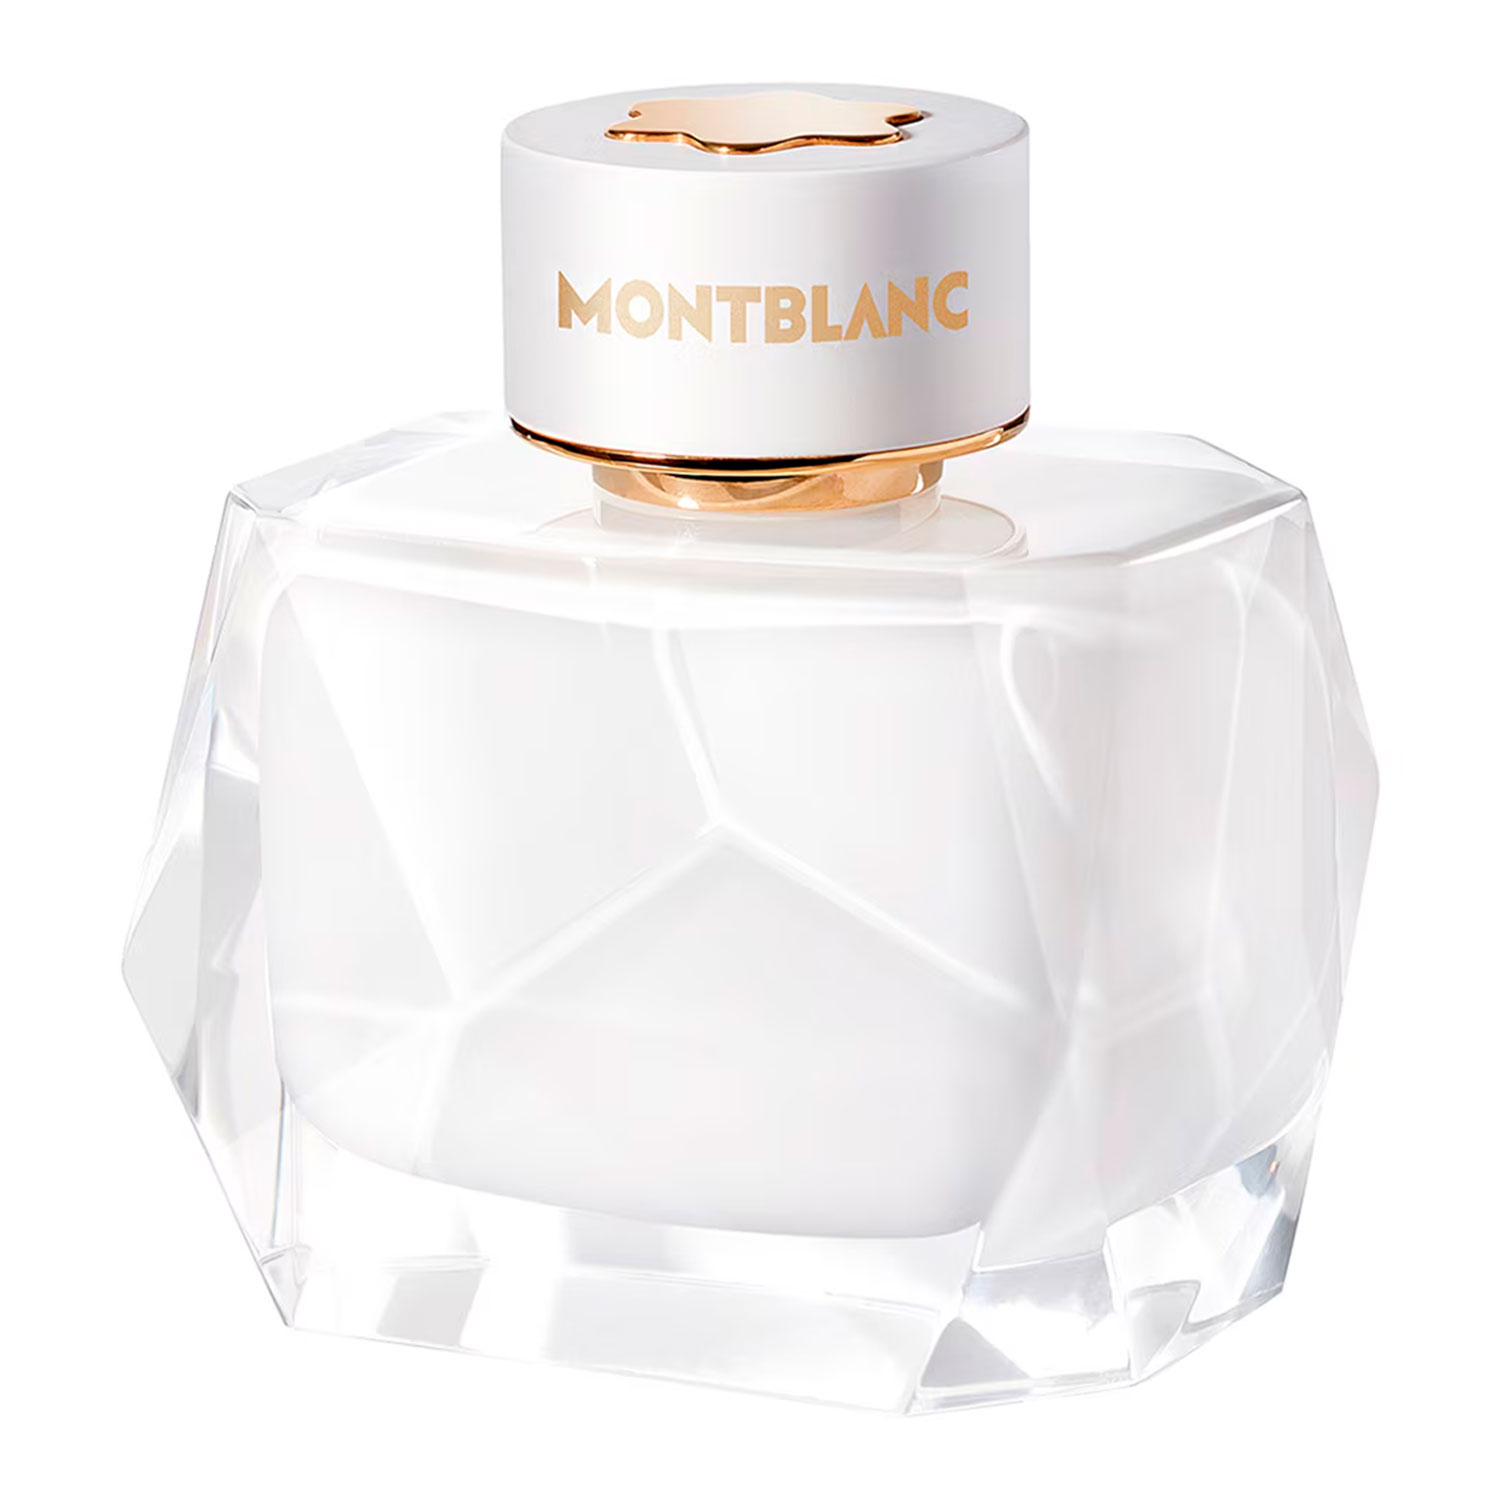 Perfume Montblanc Signature Eau De Parfum Feminino 90ml